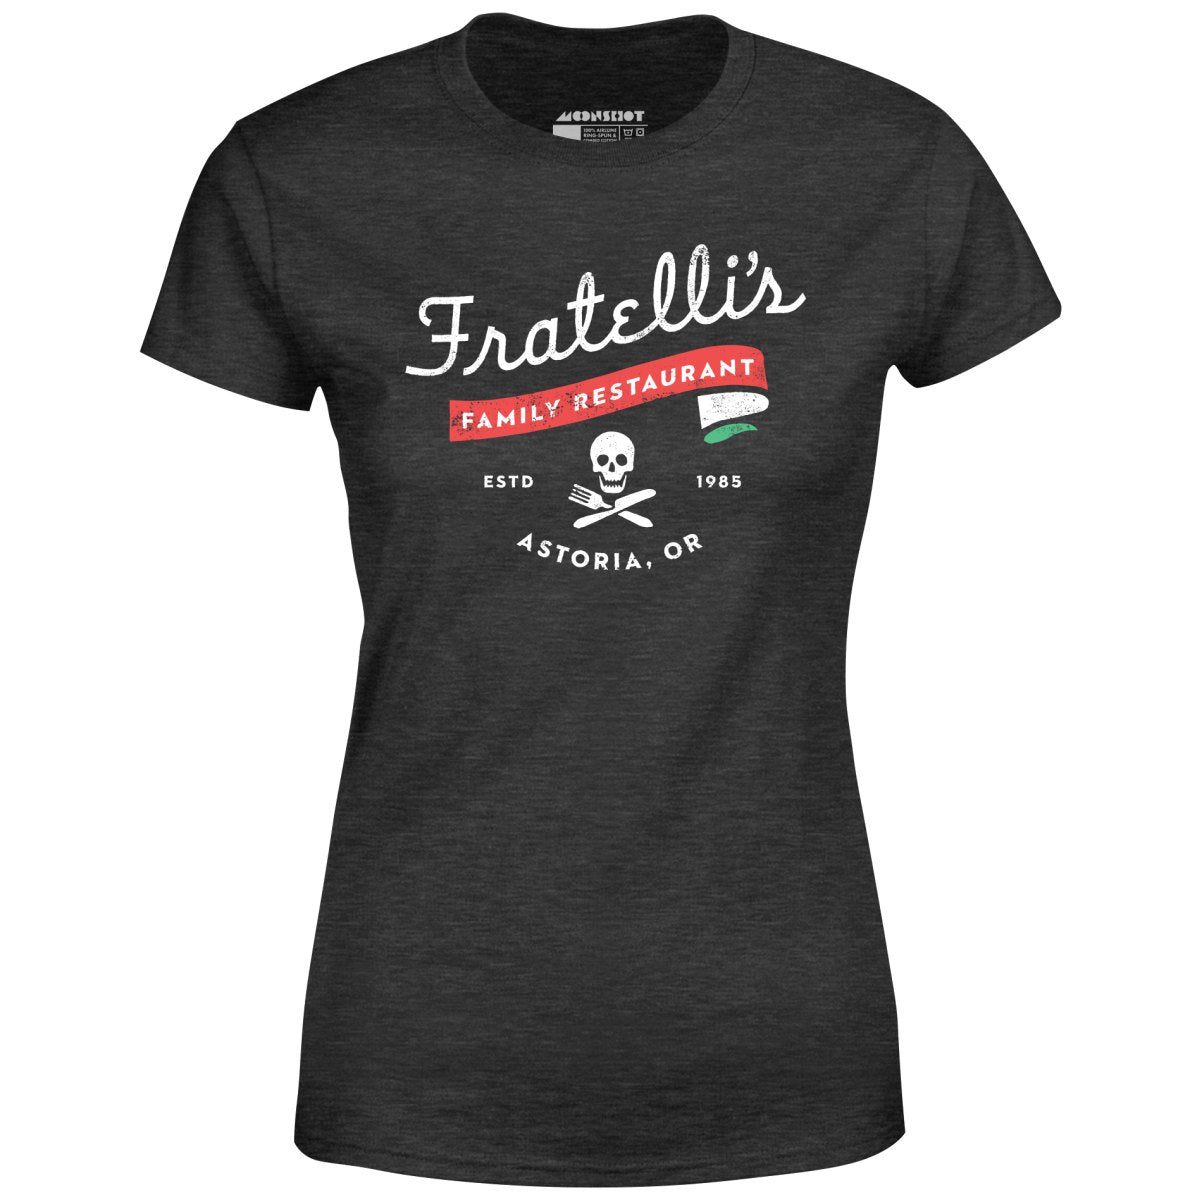 Fratelli's Family Restaurant - Women's T-Shirt